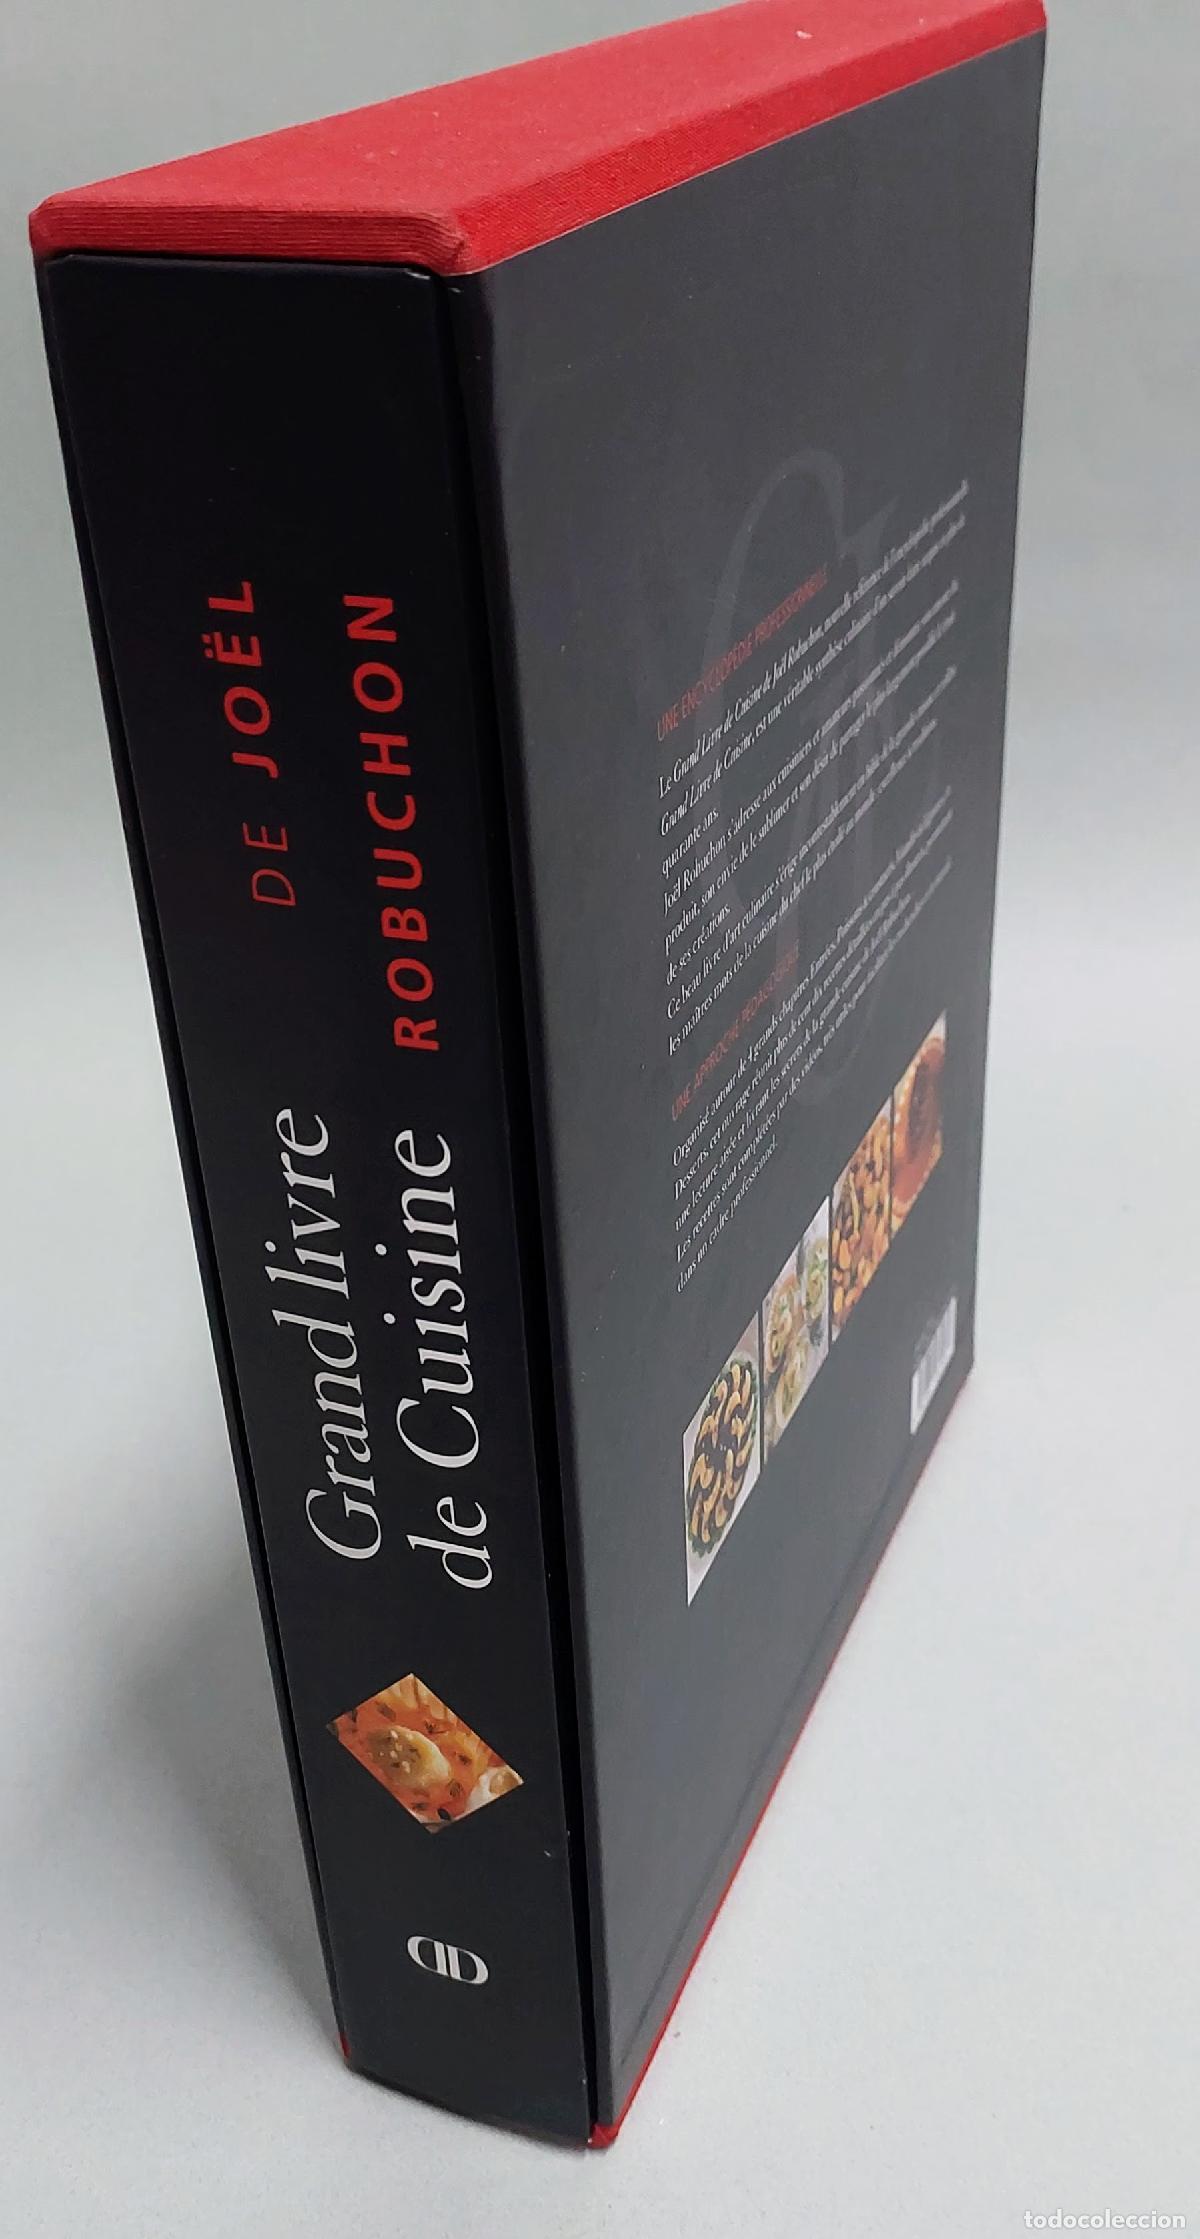 grand livre de cuisine de joël robuchon - alain - Buy Used